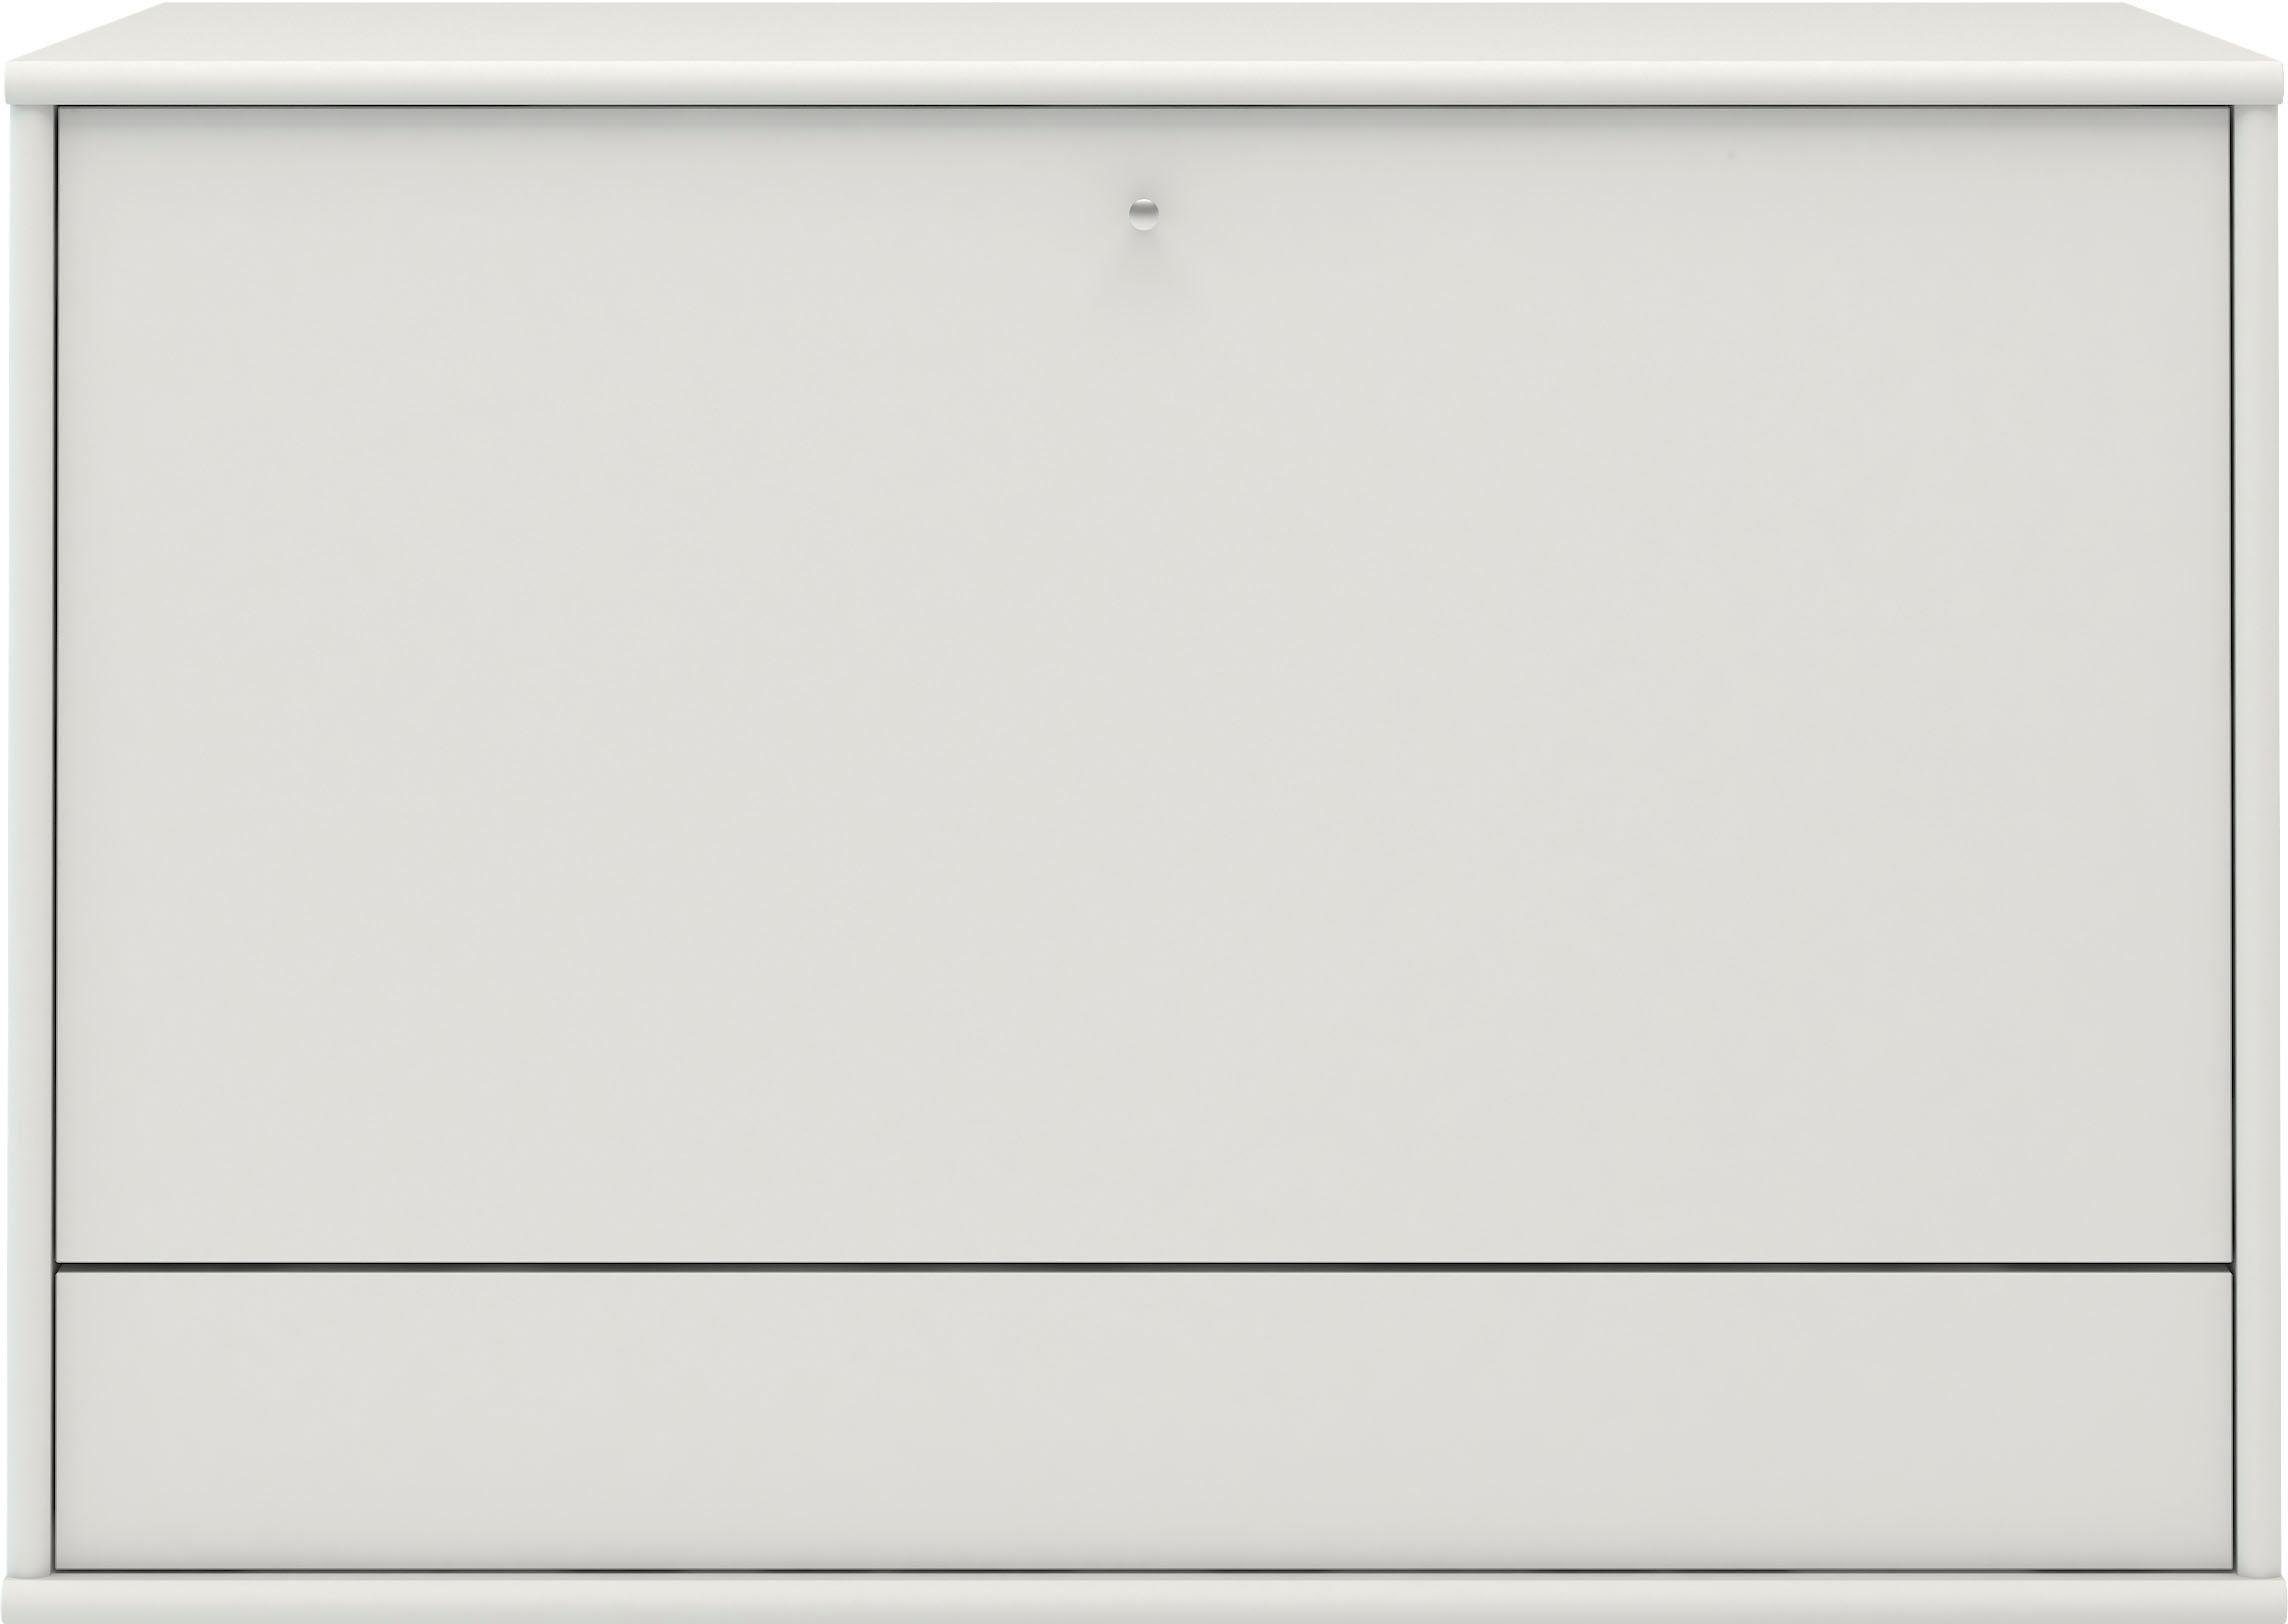 Hammel B: Arbeitstisch, Spot, cm, mit weiß Bürotisch, 89 Furniture Mistral LED Designmöbelserie Schreibtisch Tisch, Computertisch,